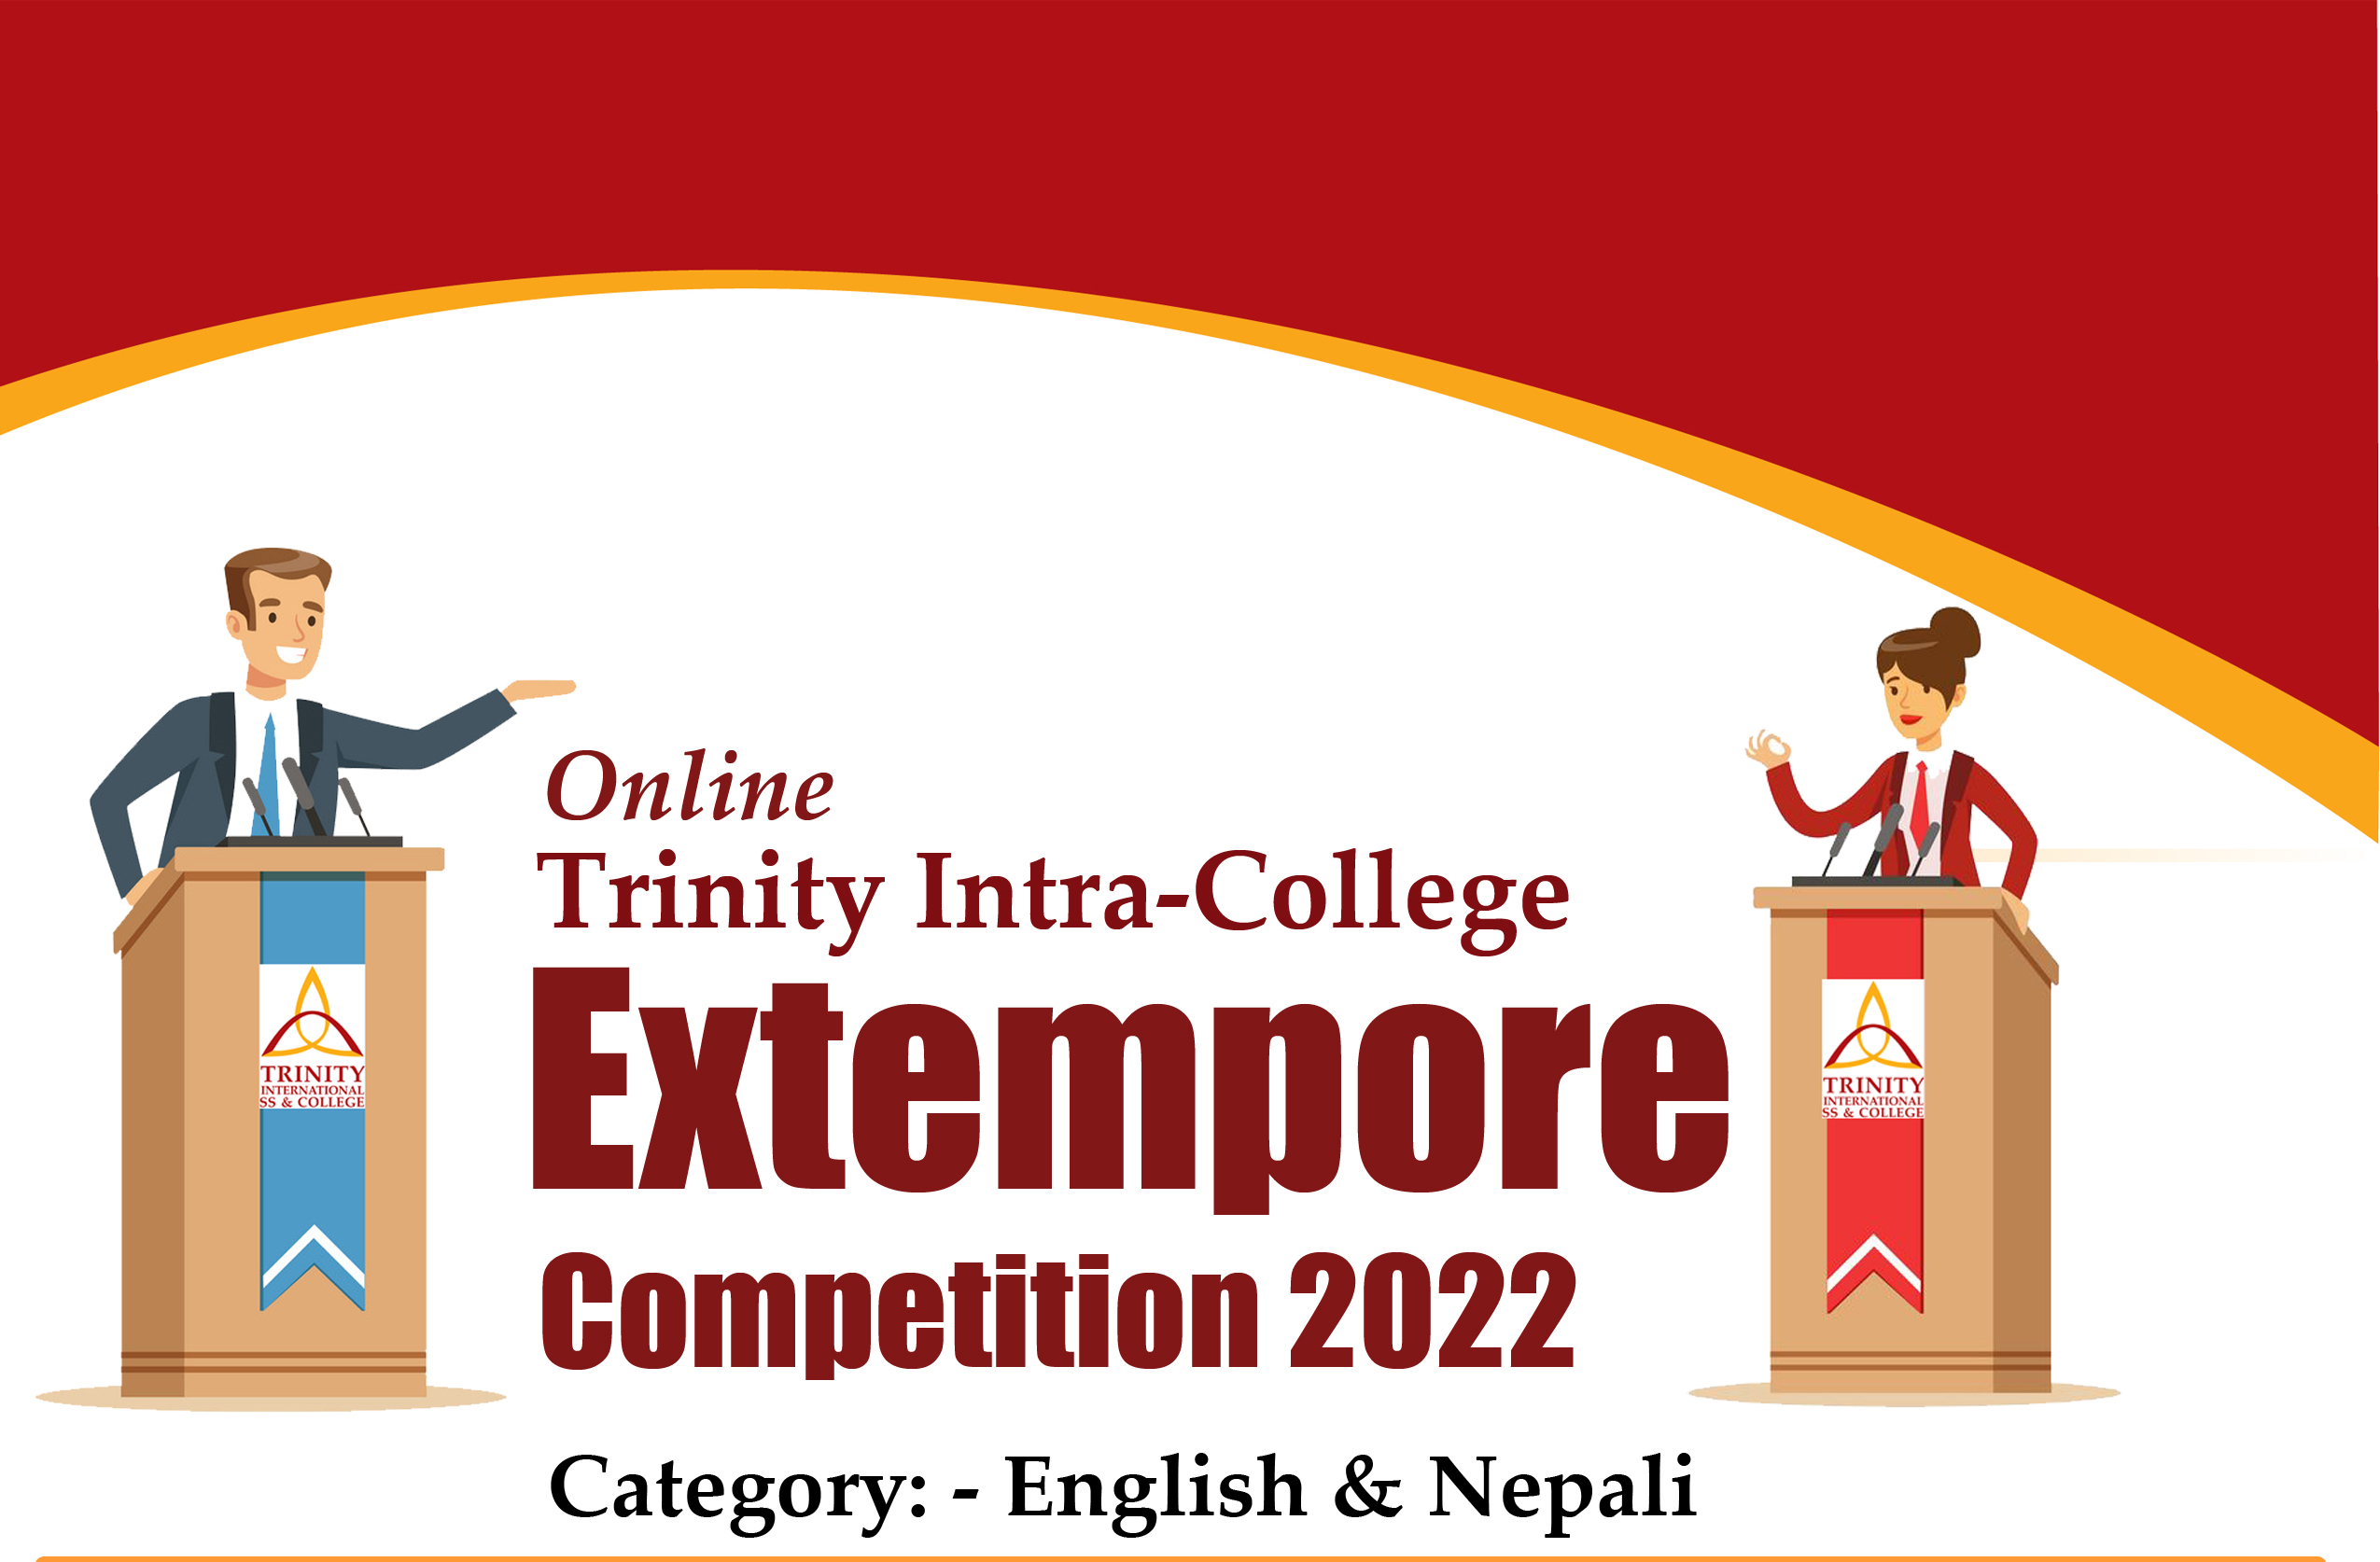 Online Extempore Competition 2022